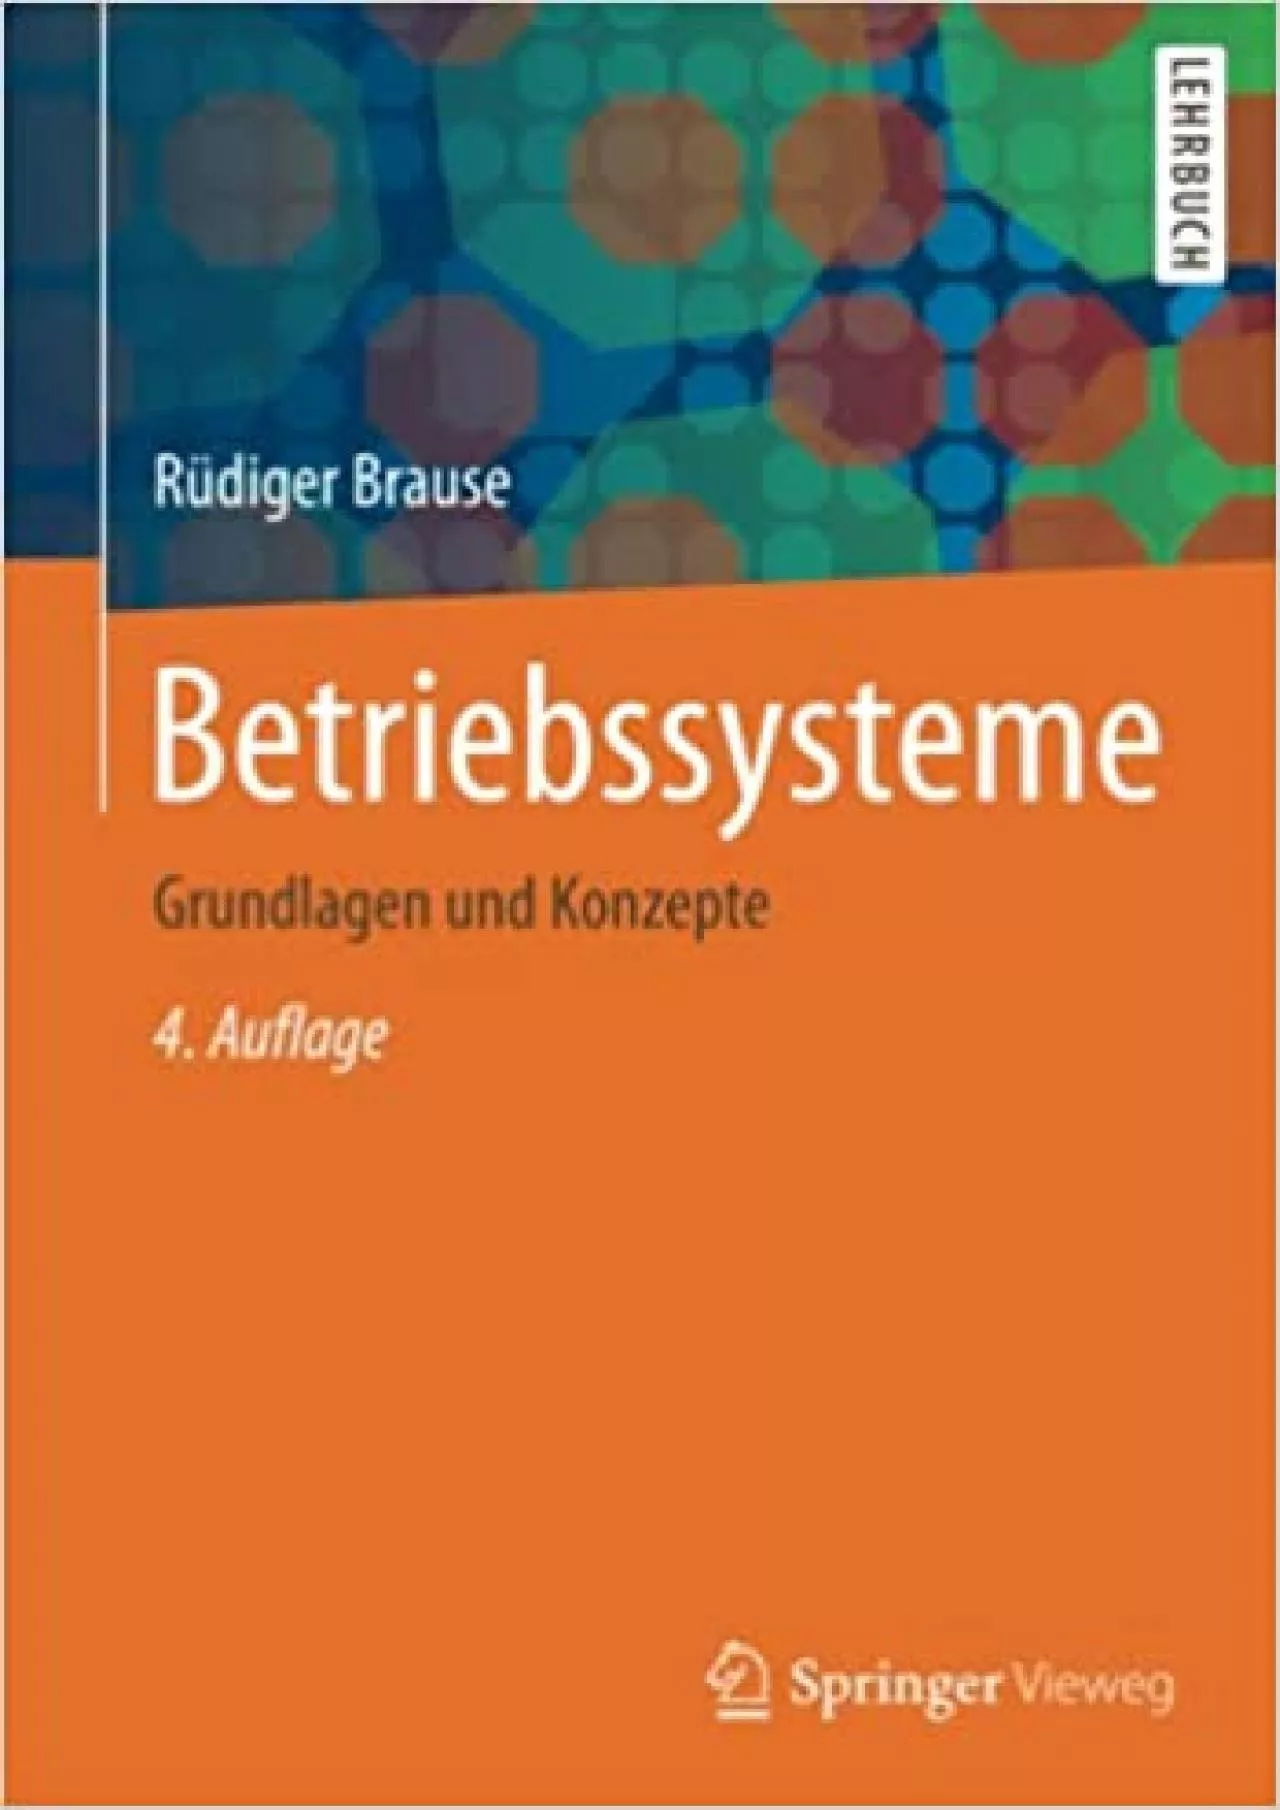 (BOOS)-Betriebssysteme Grundlagen und Konzepte (German Edition)